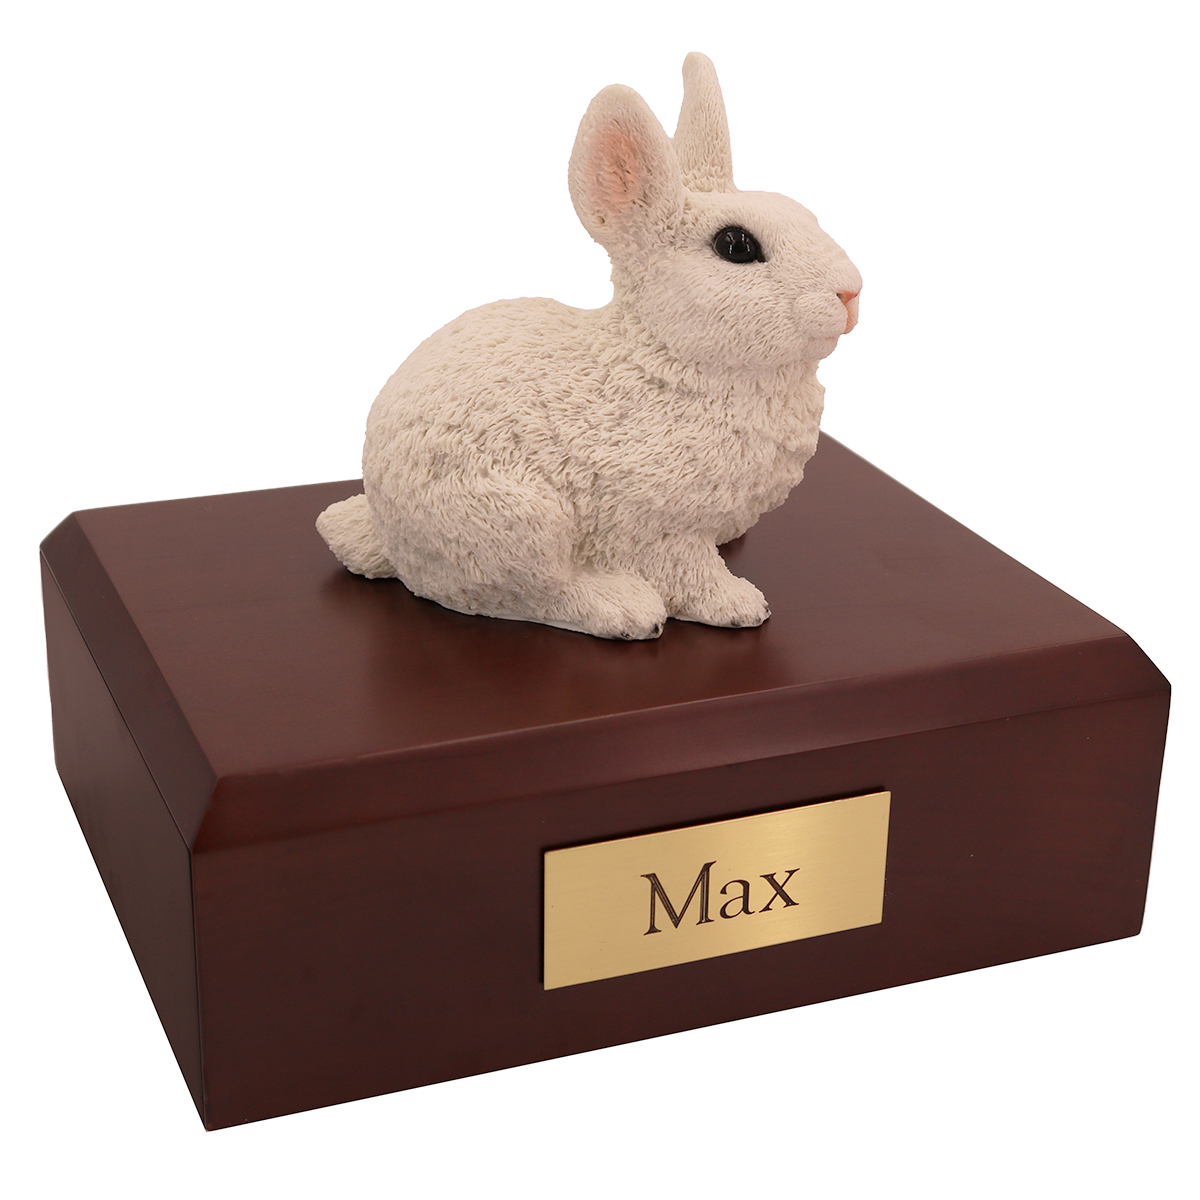 Rabbit, White - Figurine Urn